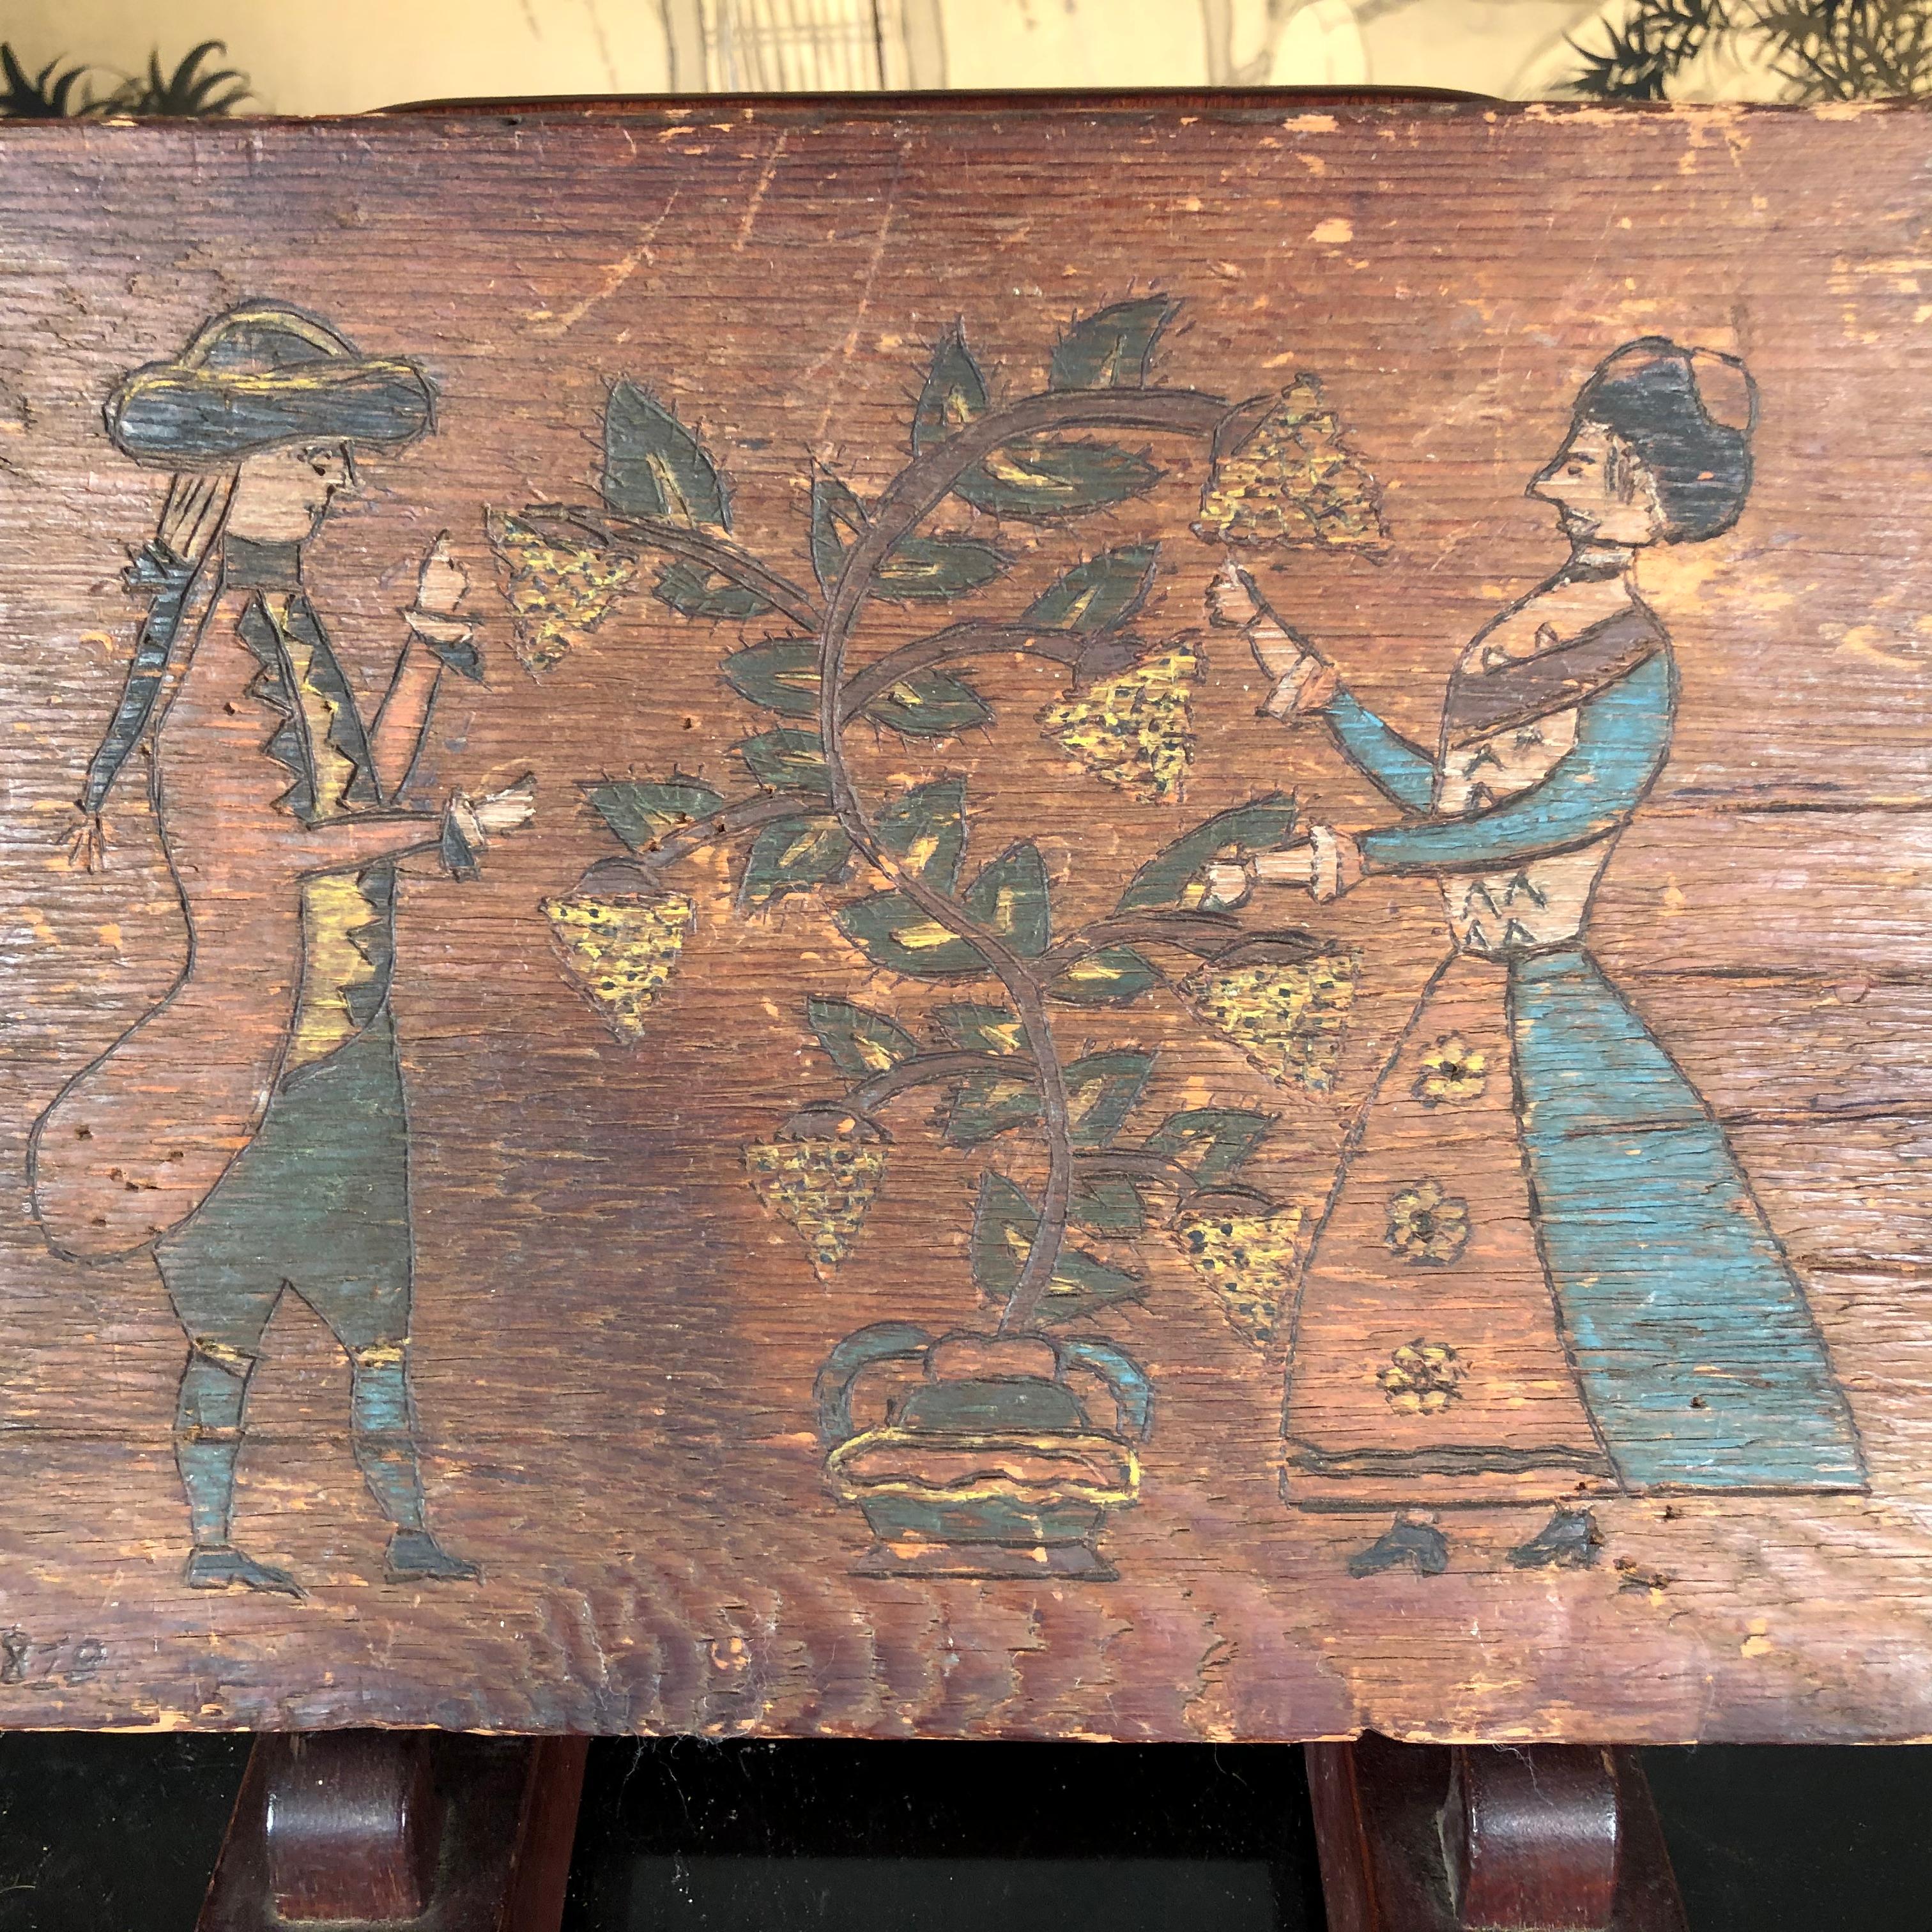 Le plus ancien panneau de portrait pyrogravé daté connu en Amérique, représentant un couple de Pennsylvanie.

Cette œuvre d'art unique est incisée à la main à l'aide d'une technique de pyrogravure sur bois, puis teintée/peinte à la